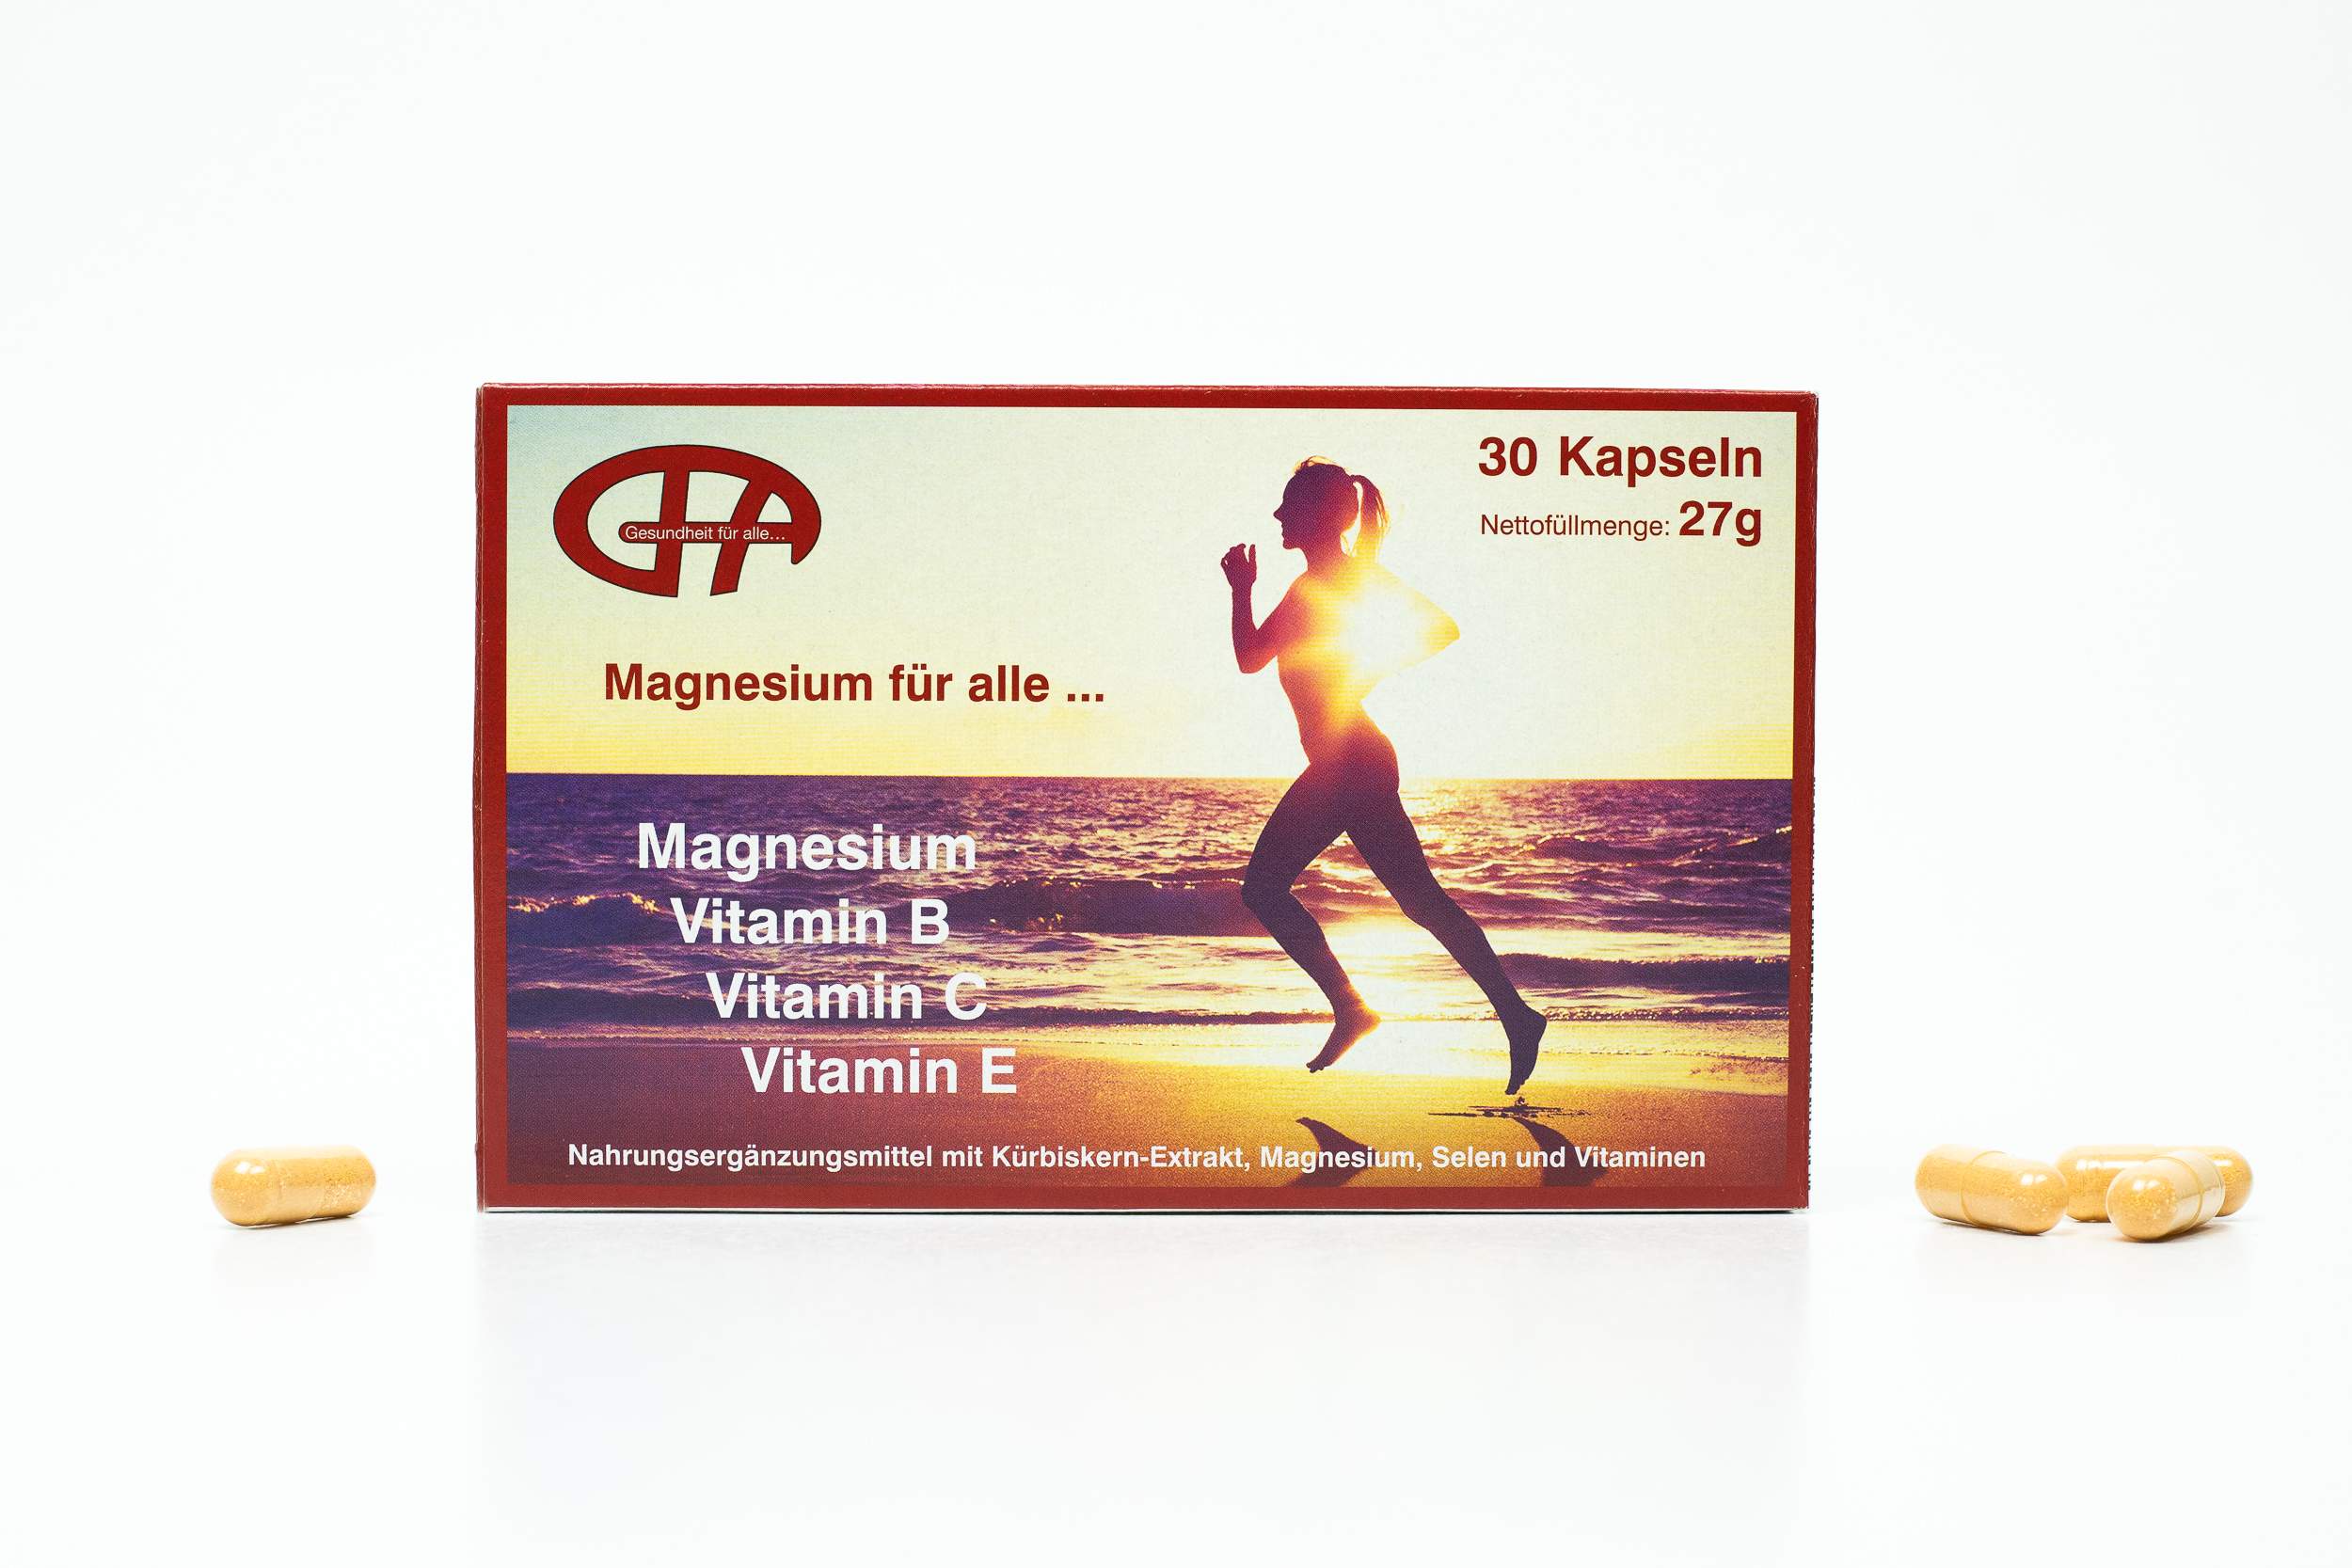 GFA Magnesium